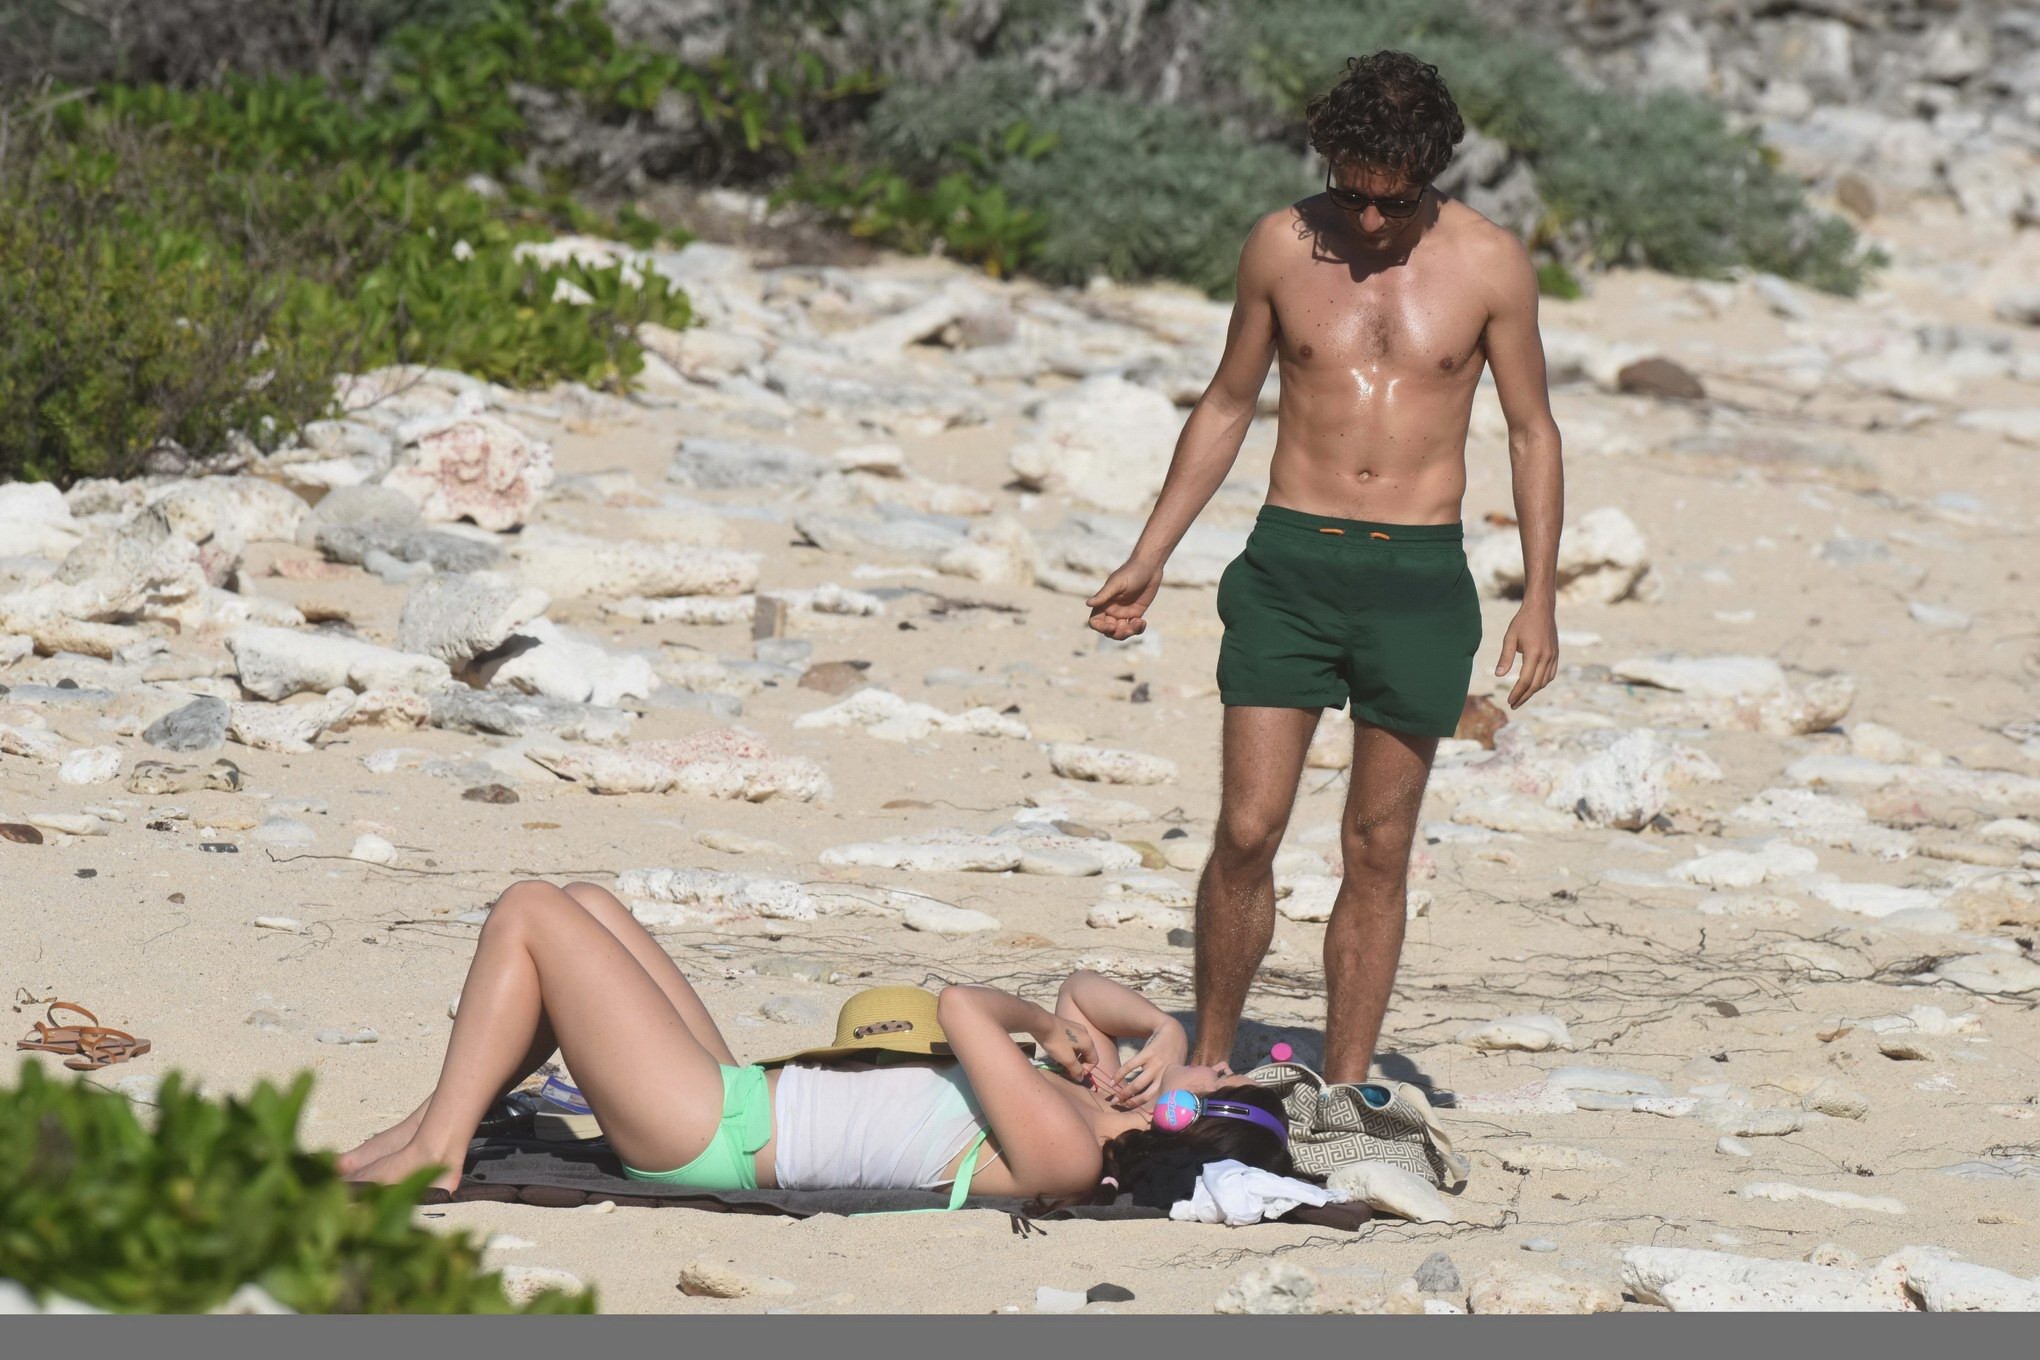 Stbartsのビーチで緑のビキニを着ているLana del rey
 #75176934